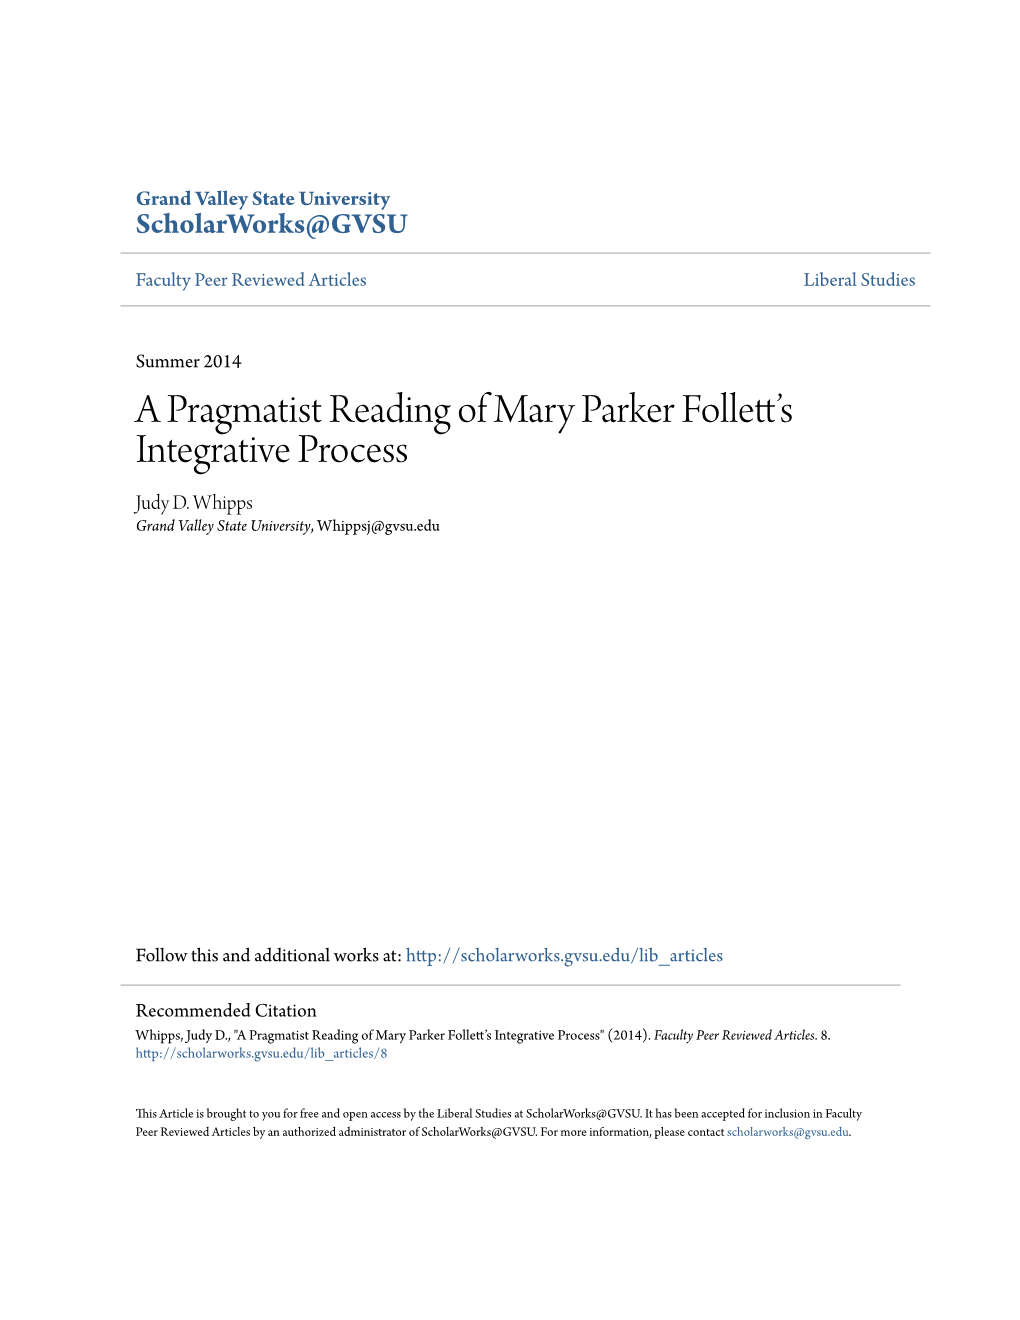 A Pragmatist Reading of Mary Parker Follett's Integrative Process